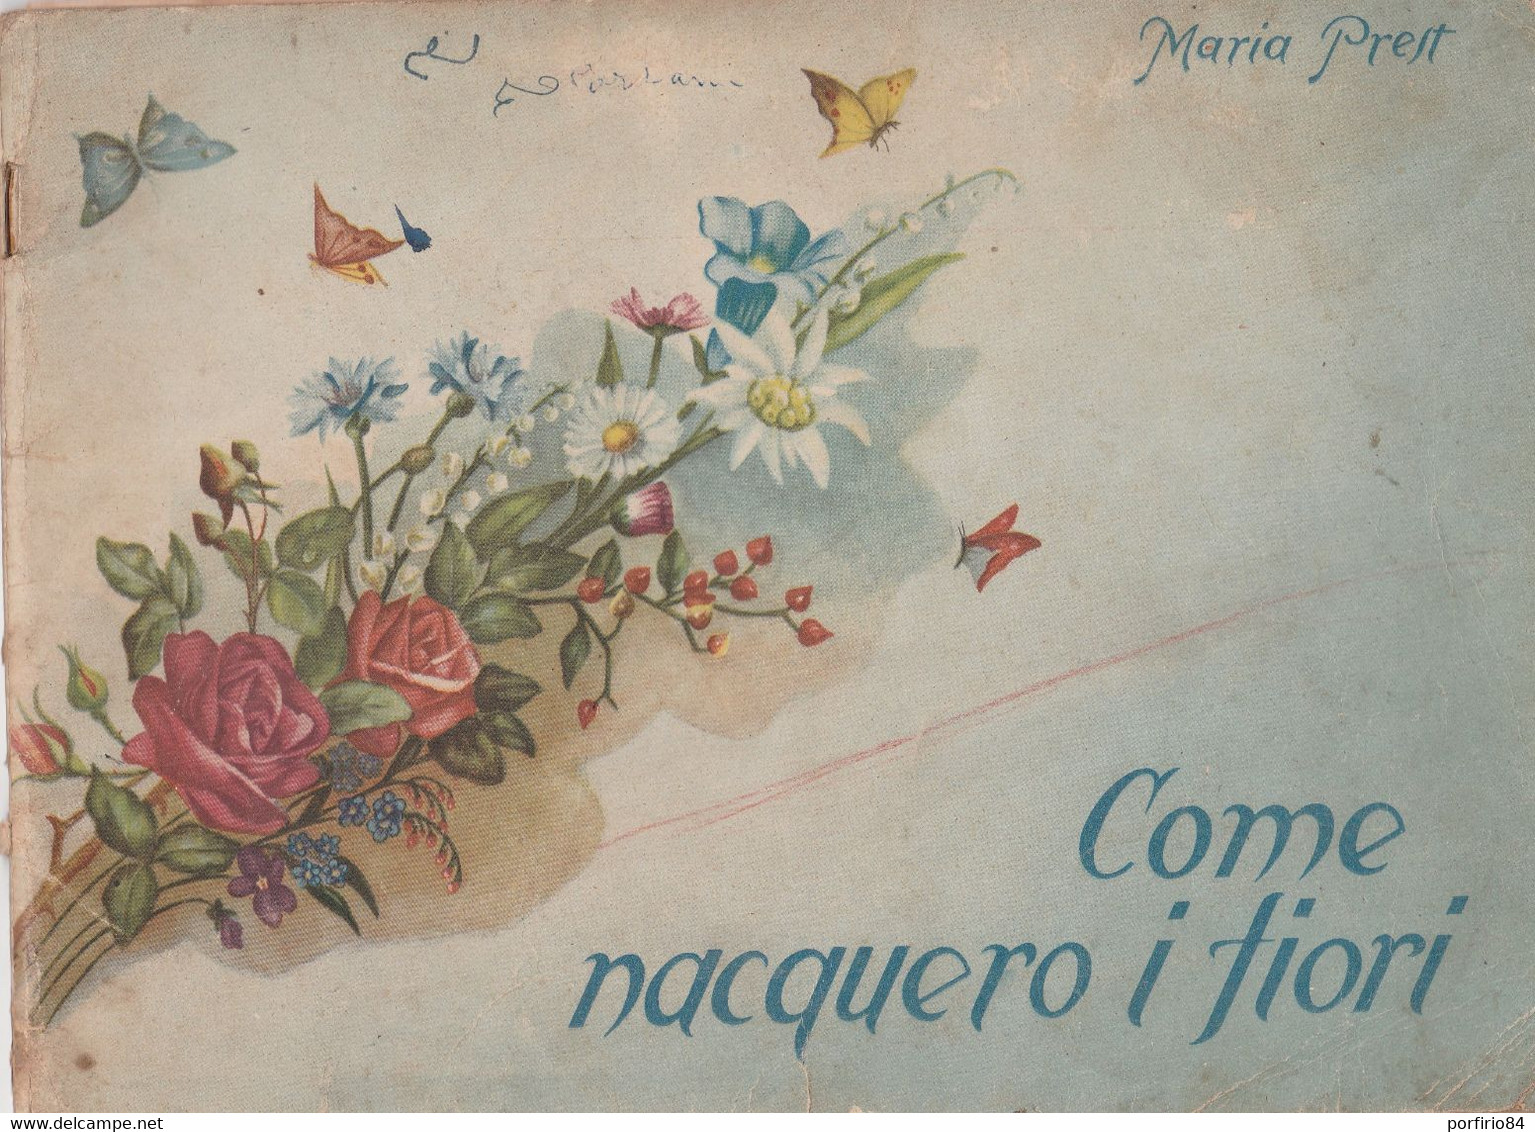 RARO - MARIA PREST COME NACQUERO I FIORI  Illustrato BUSSO - 1945  Istituto FIGLIE DI SAN PAOLO - ROMA - Bambini E Ragazzi